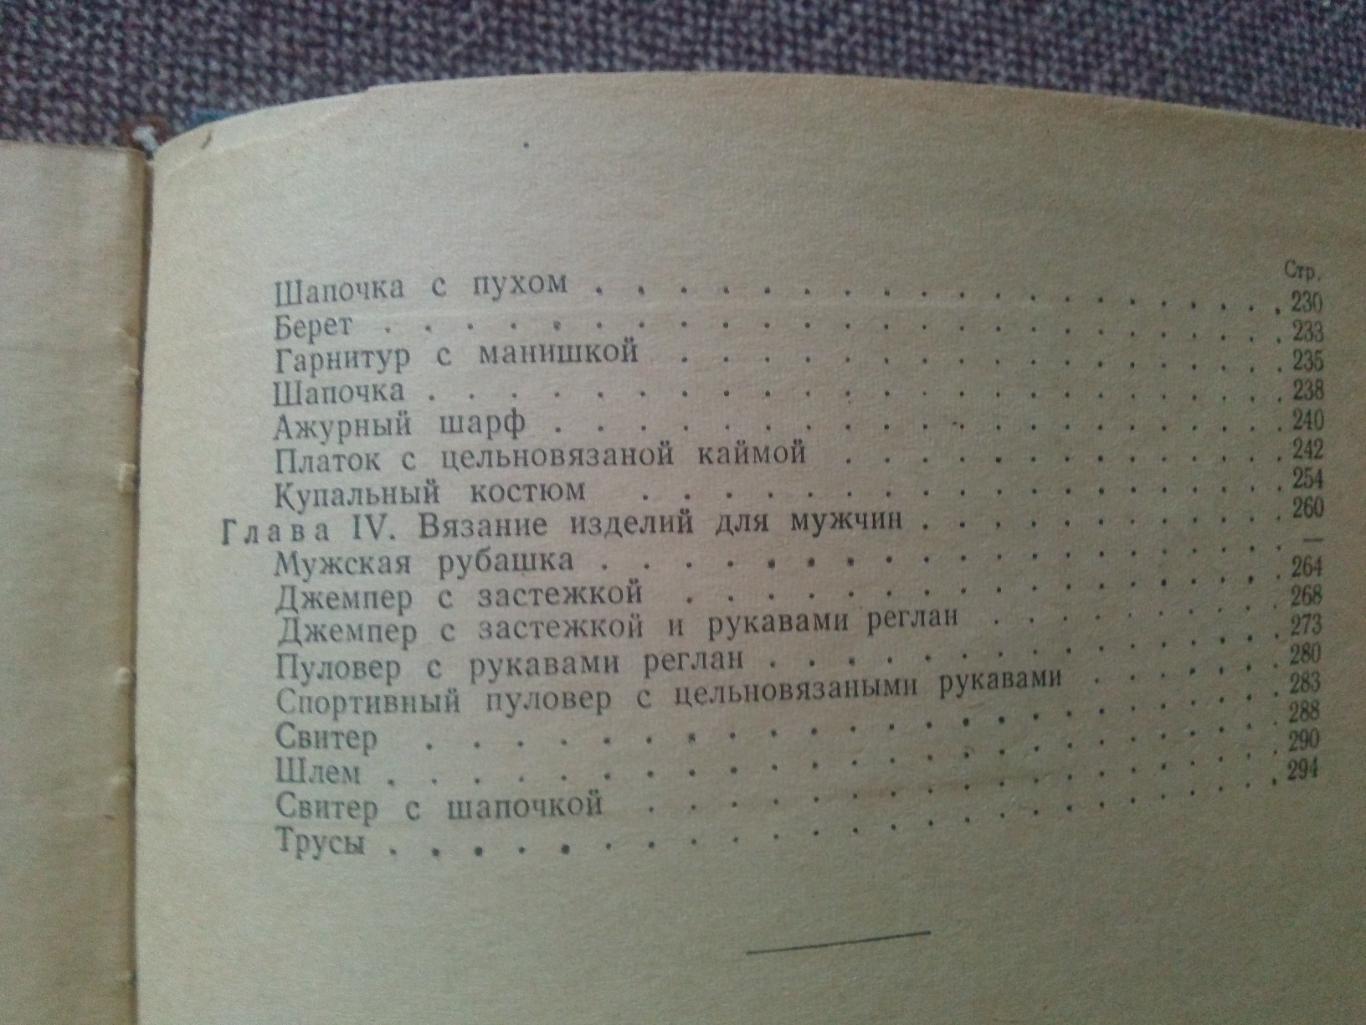 Т. Зубкова , Т. Смирнова - Художественное вязание на спицах 1965 г. 2